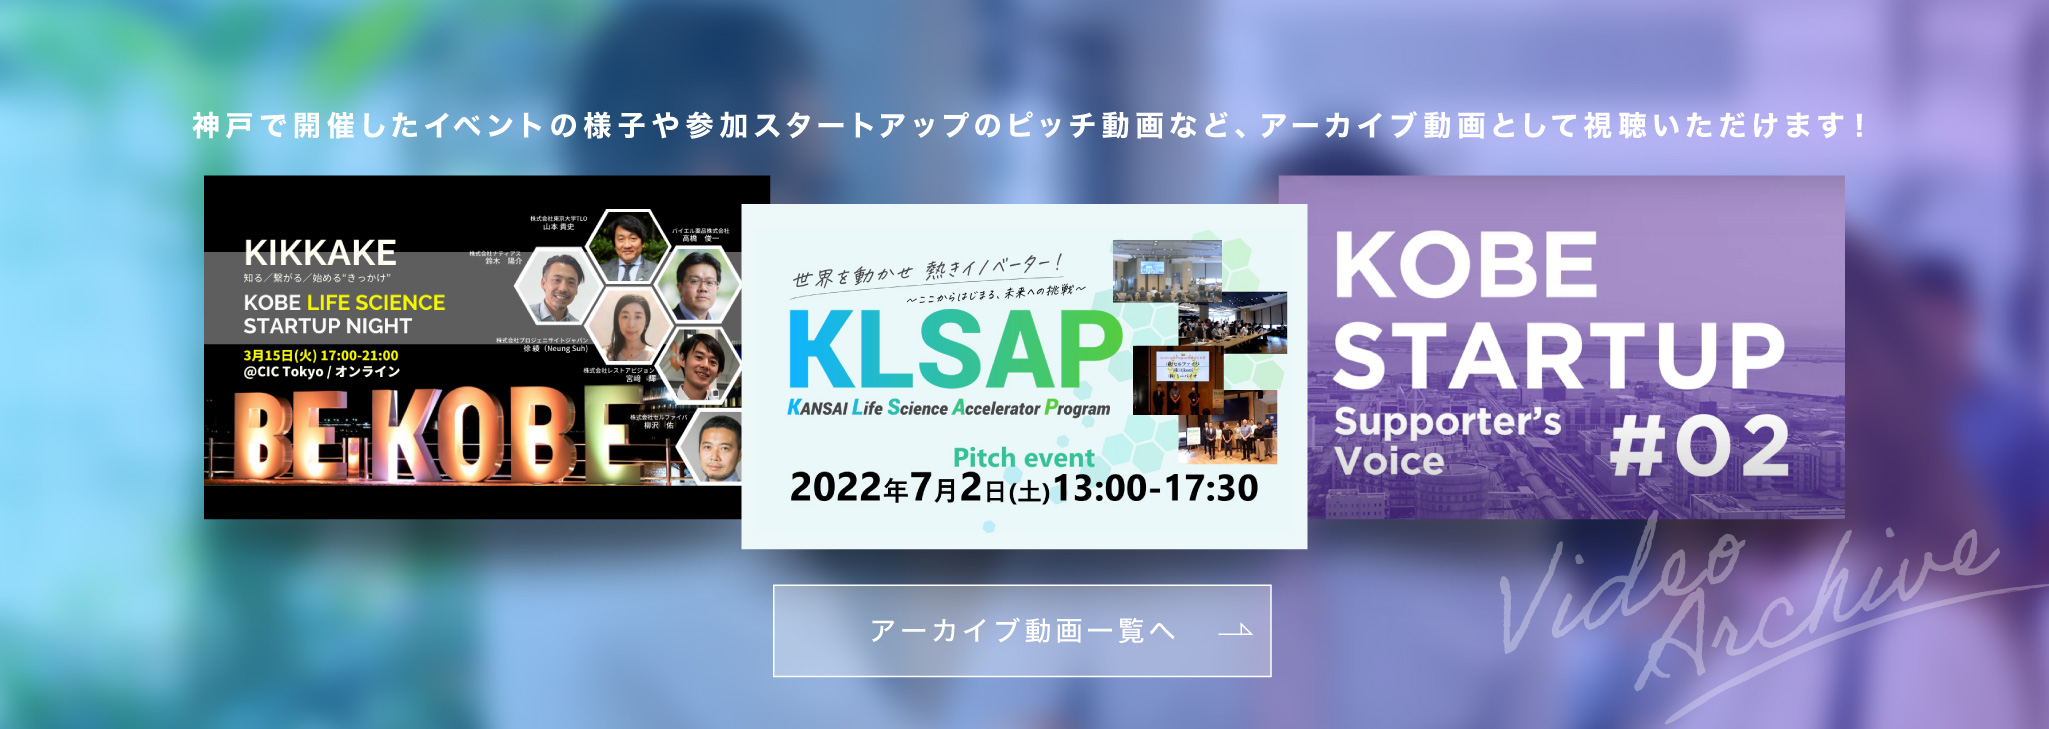 神戸で開催したイベントの様子や参加スタートアップのピッチ動画など、アーカイブ動画として視聴いただけます！